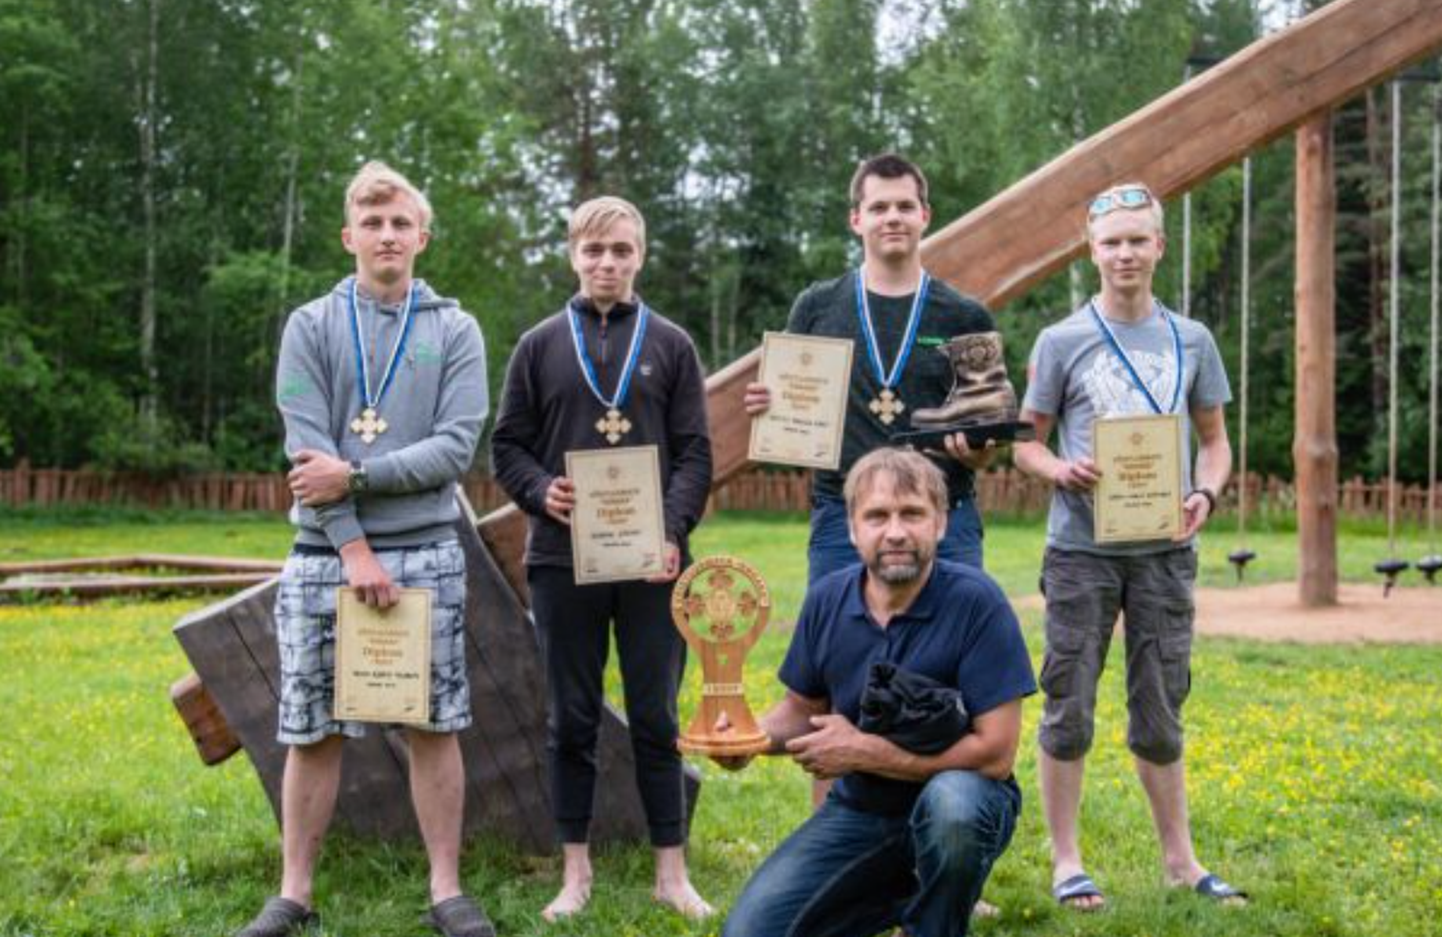 Võitjavõistkonna liikmed Trond Bjarte Tagamets, Kaspar Kõrbe, Kevyn-Marcus Räst ja Heiko-Hardi Reinhold koos esindaja Jaanus Tammesooga.